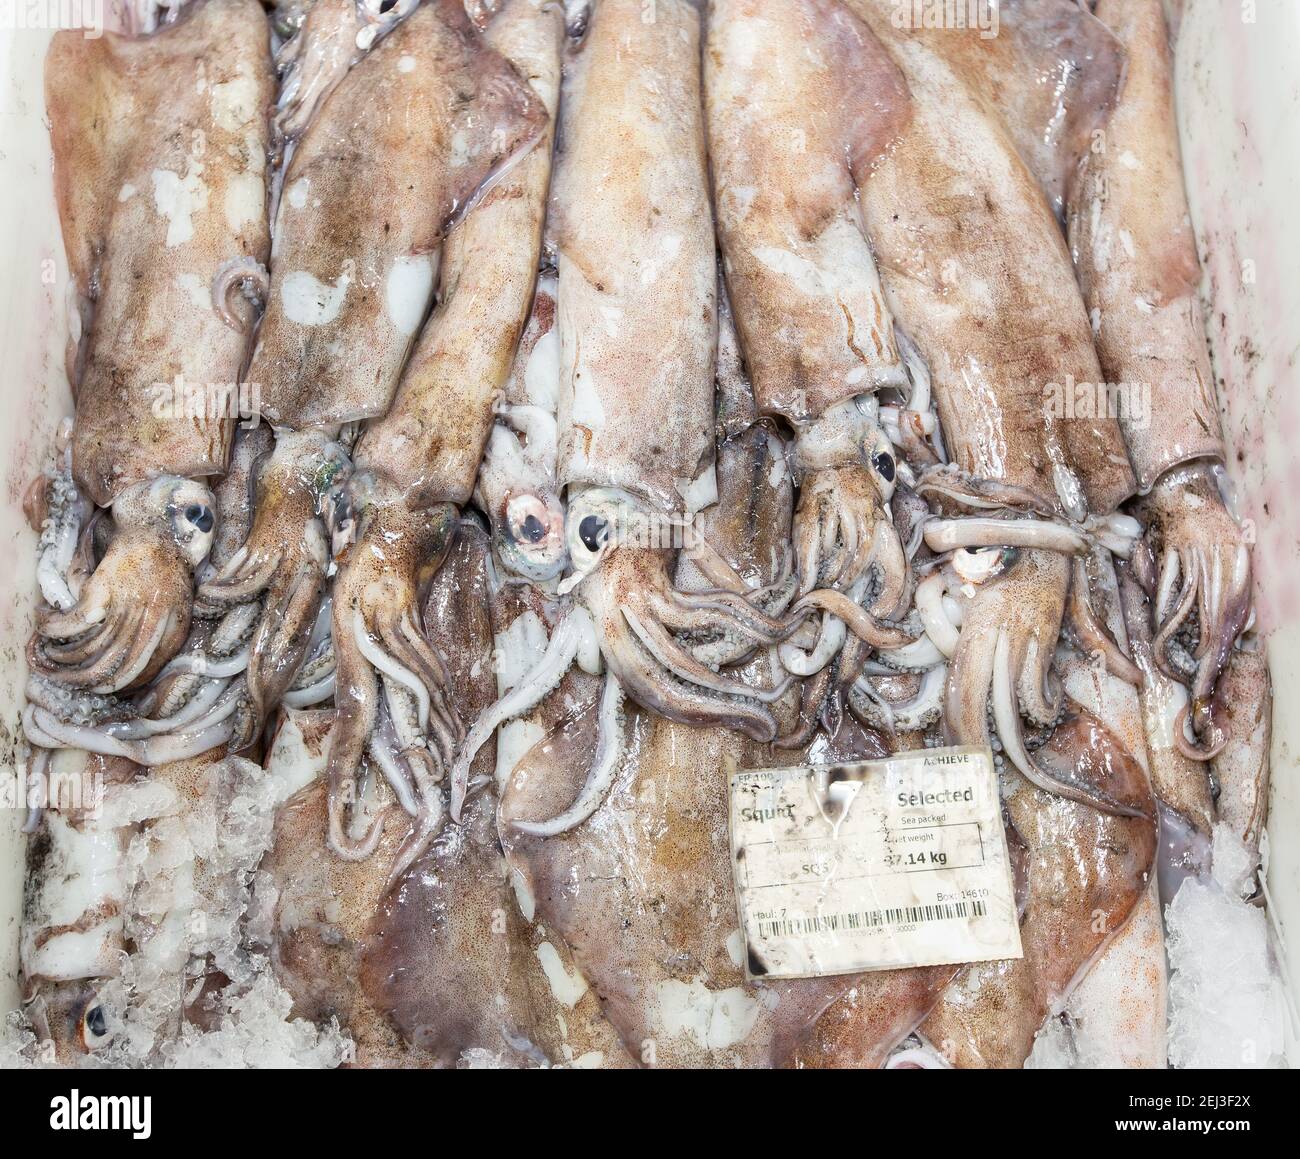 Calamares recién desembarcados en una caja a la venta en un mercado de pescado Foto de stock